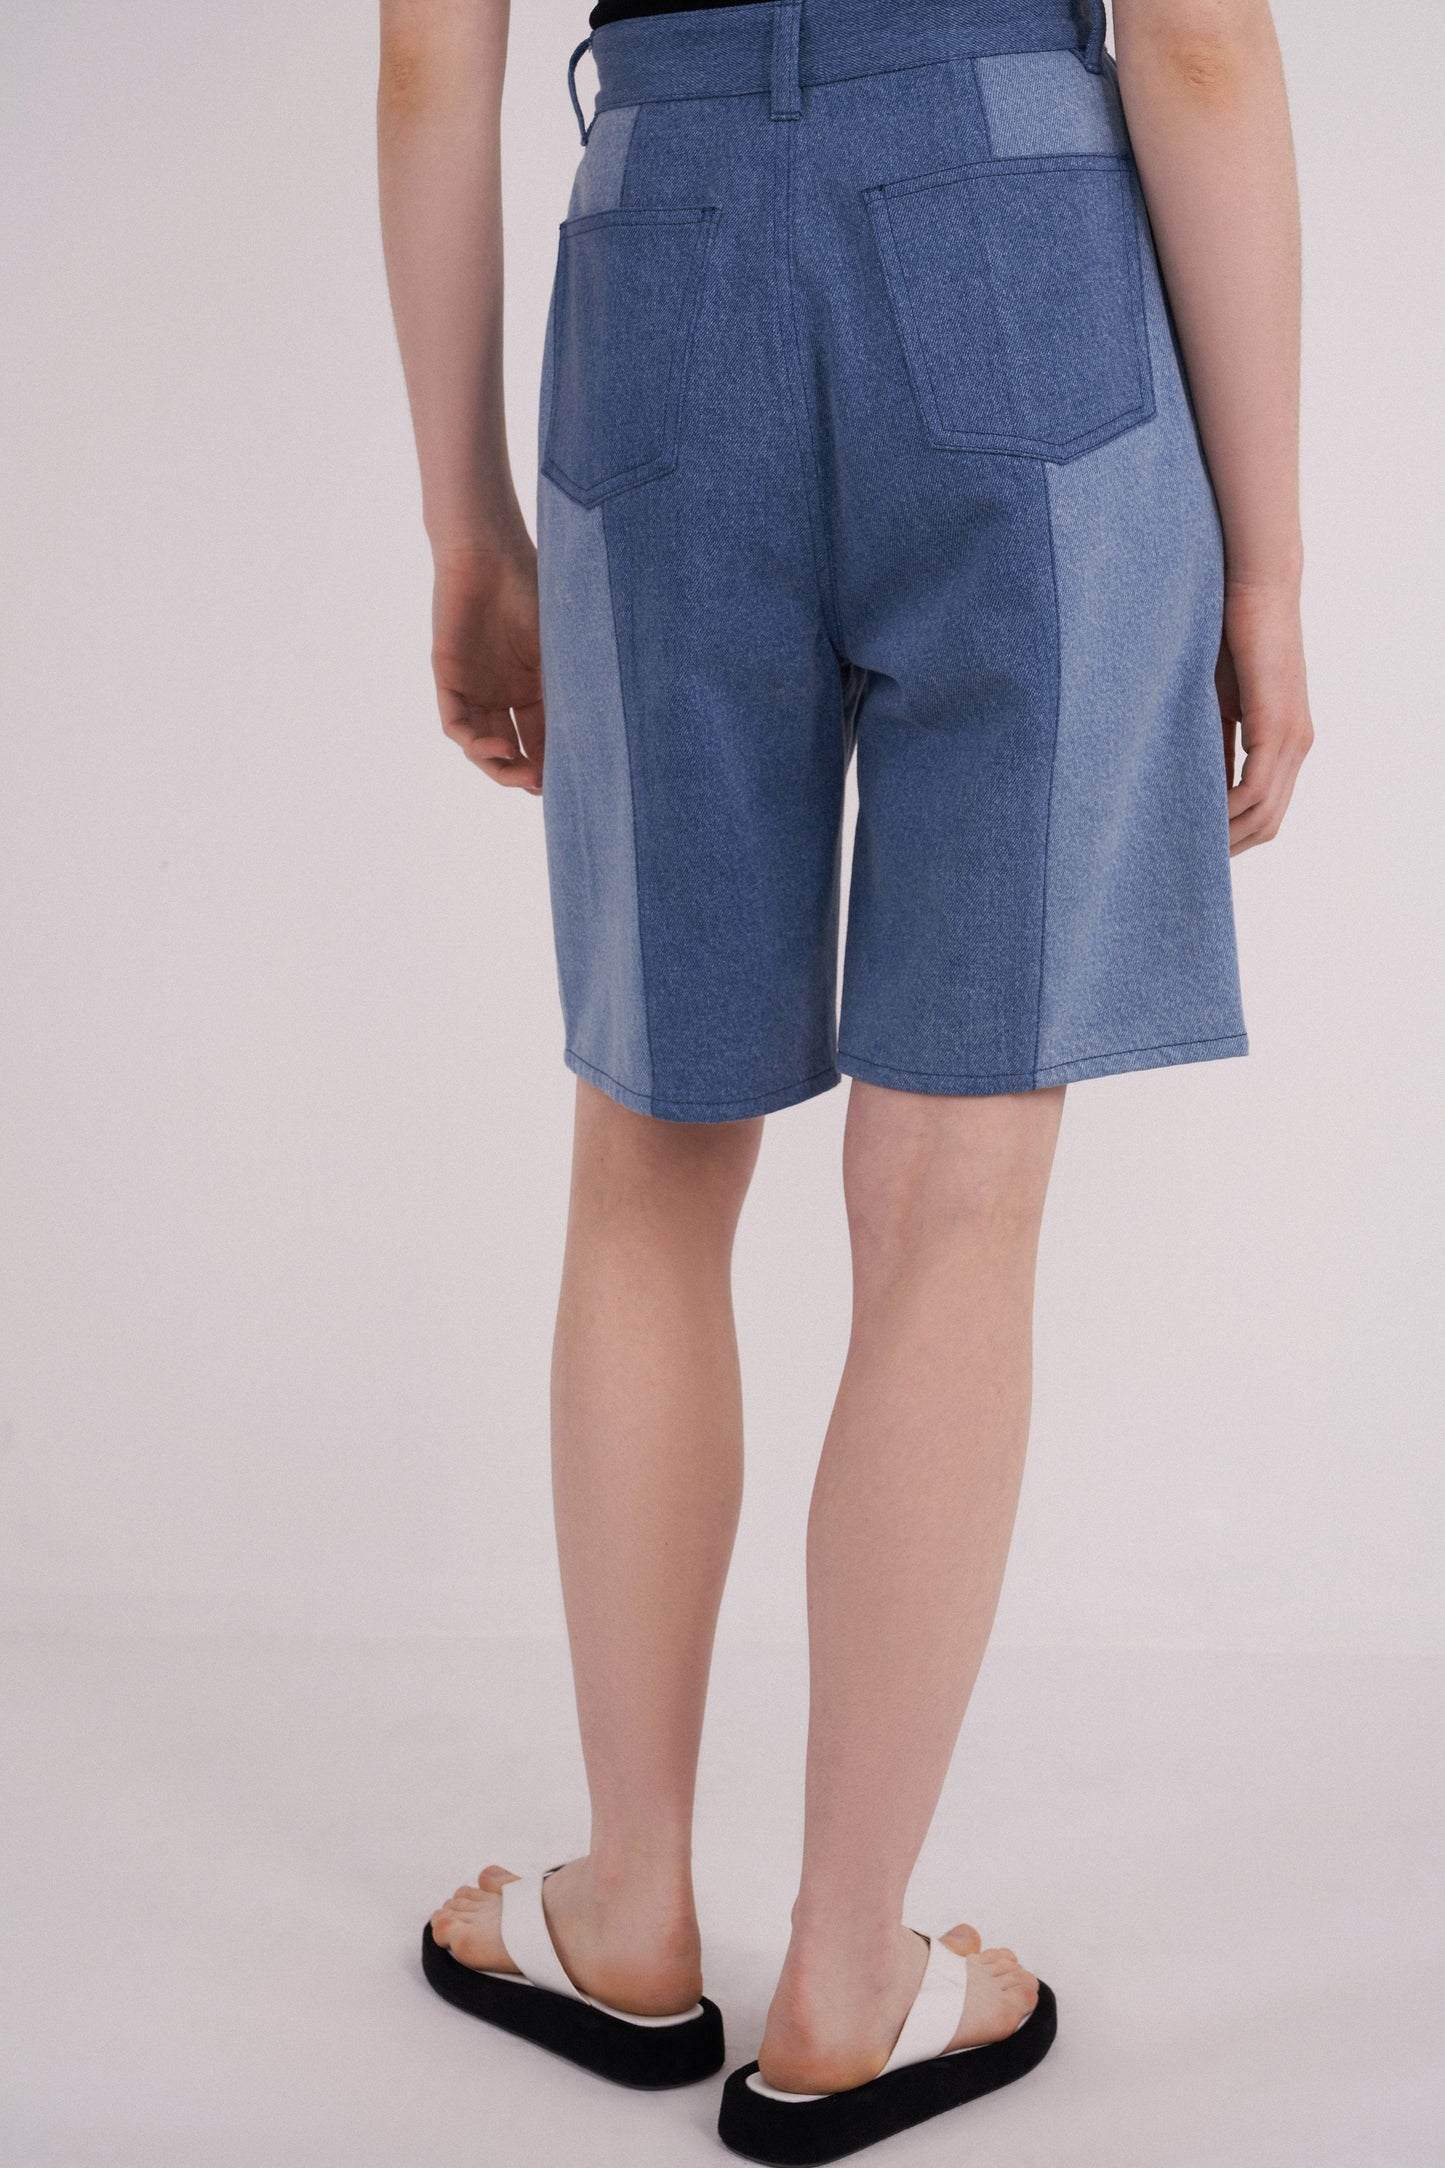 Wader Color Block Shorts in Washed Denim